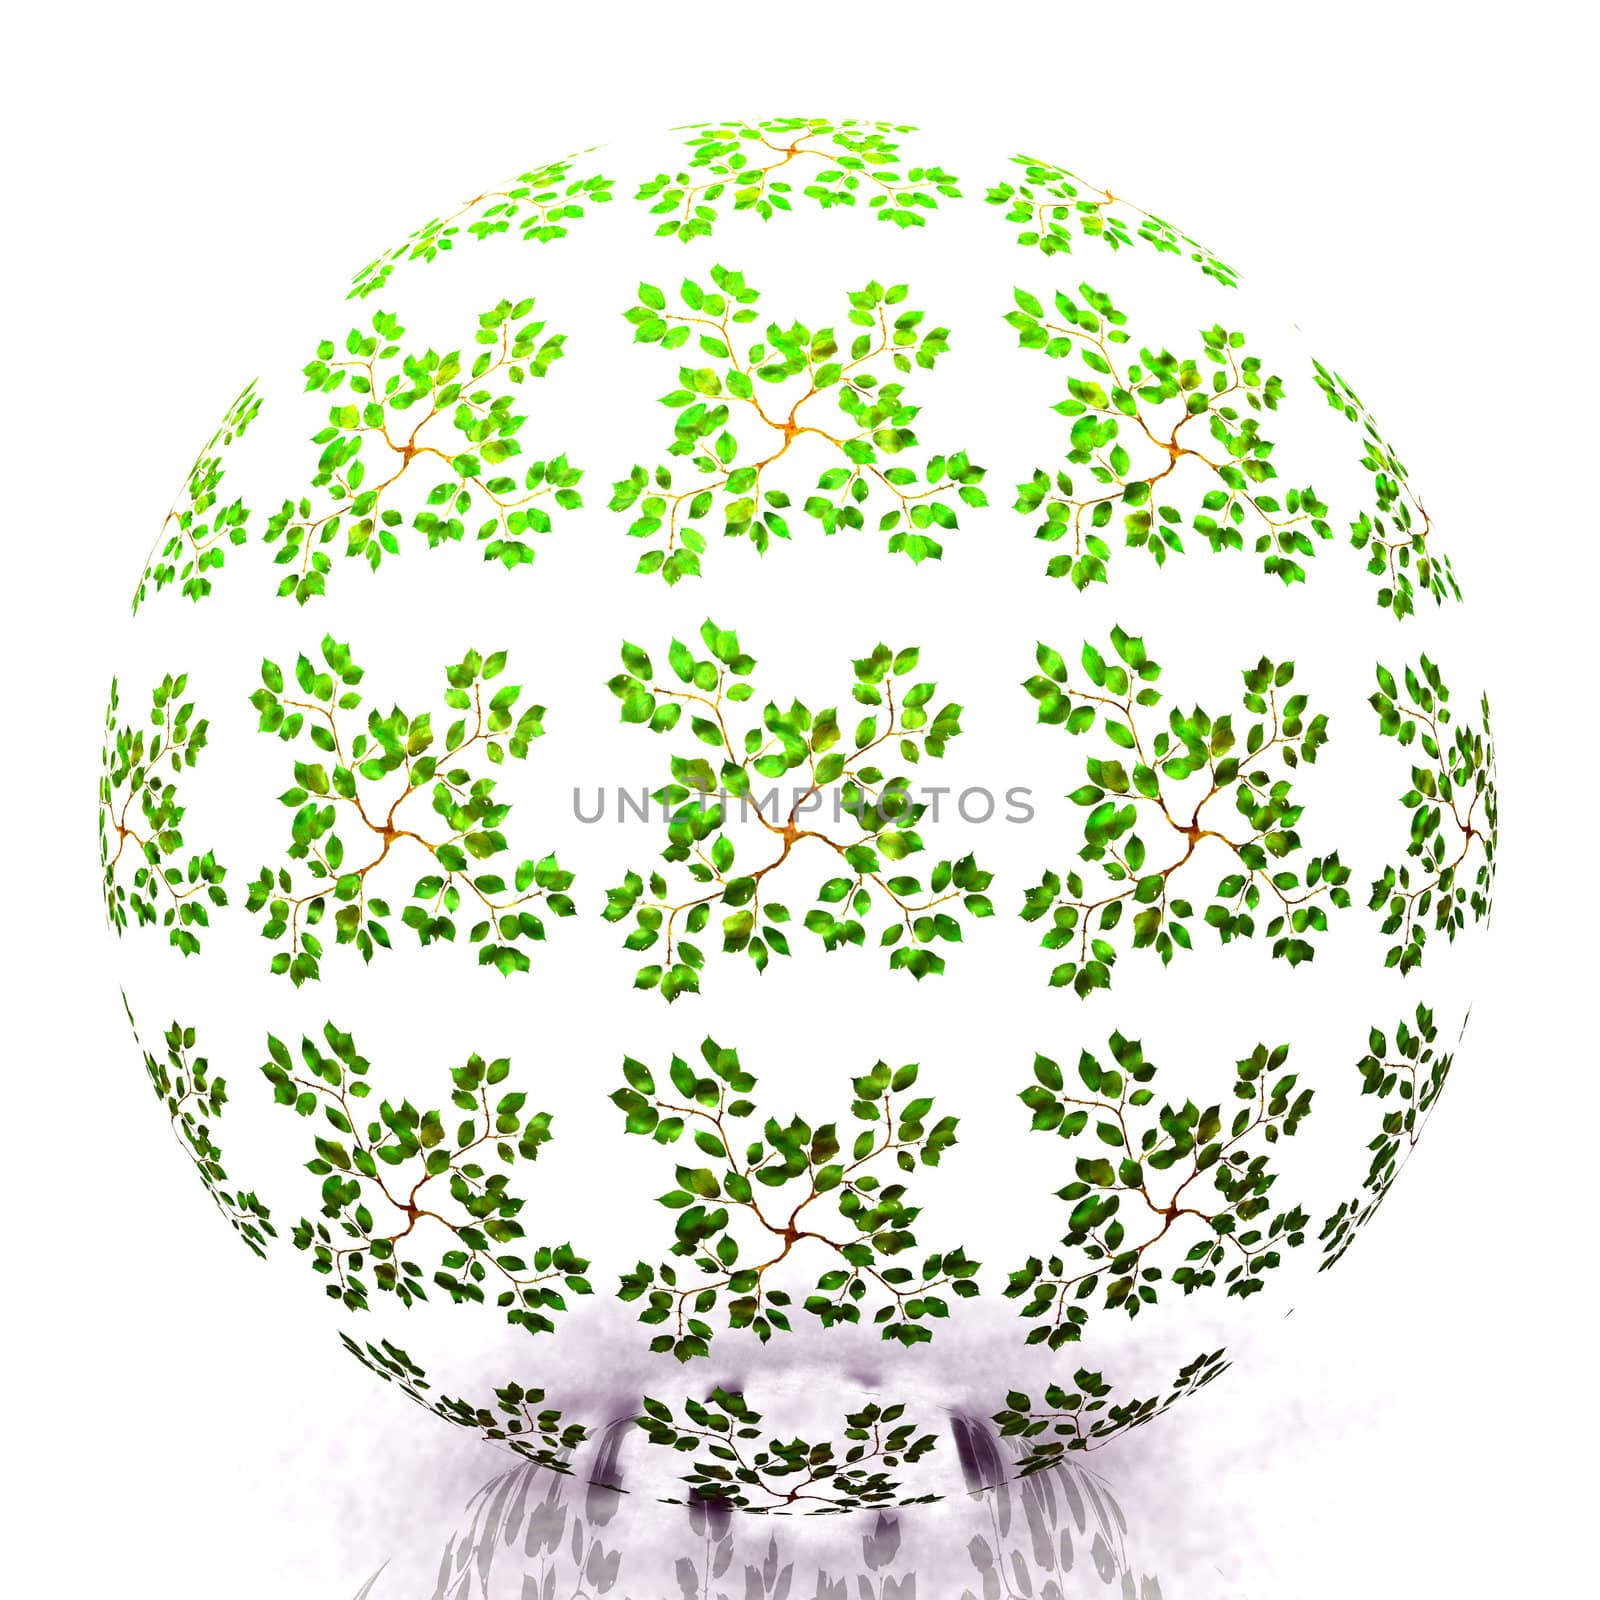 the leaves sphere by njaj